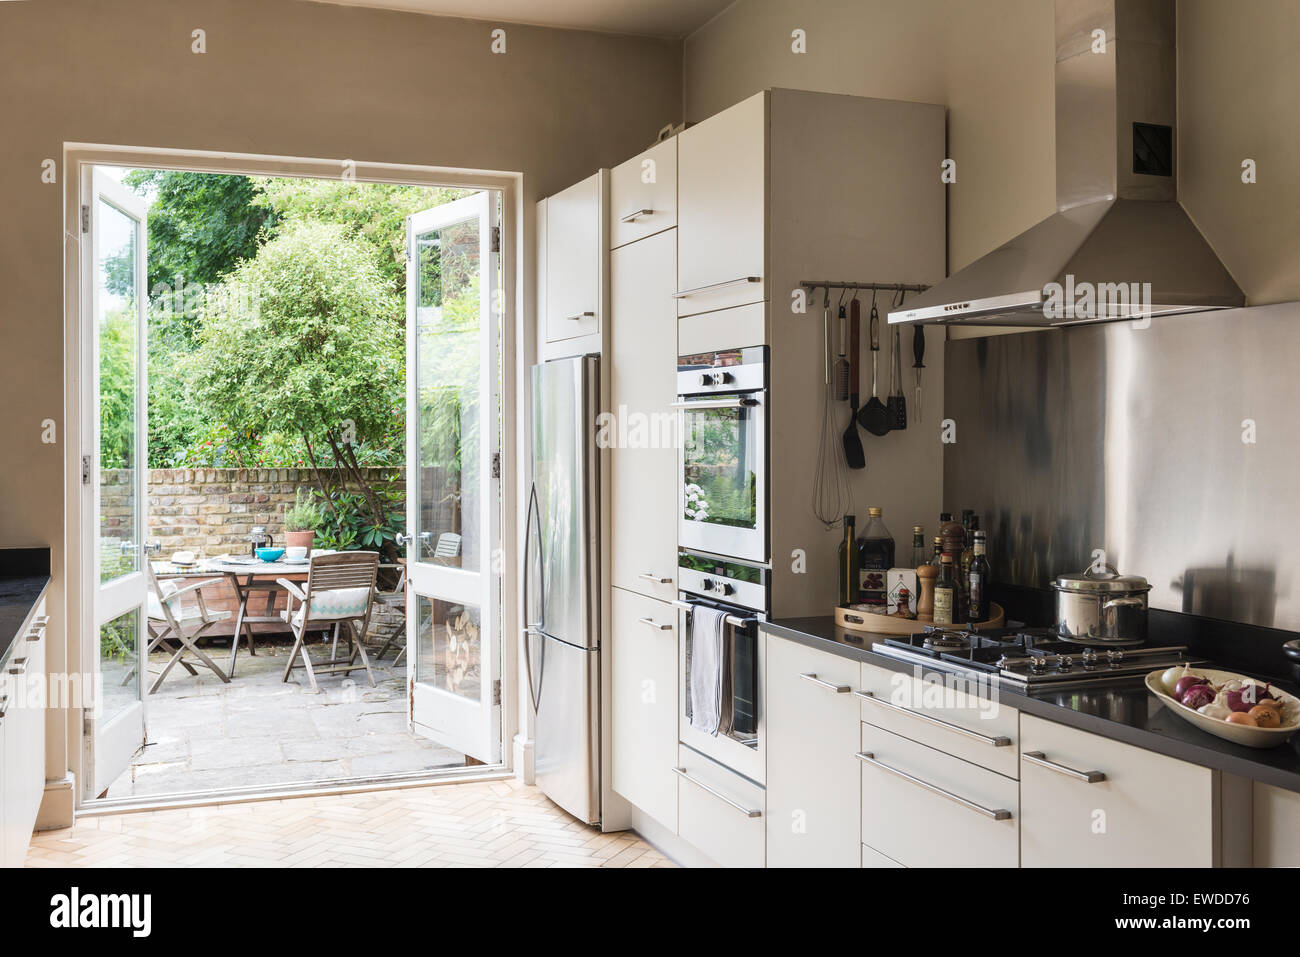 Portes-fenêtres s'ouvrent sur jardin de cuisine avec appareils en acier inoxydable et les surfaces de travail en granit Banque D'Images